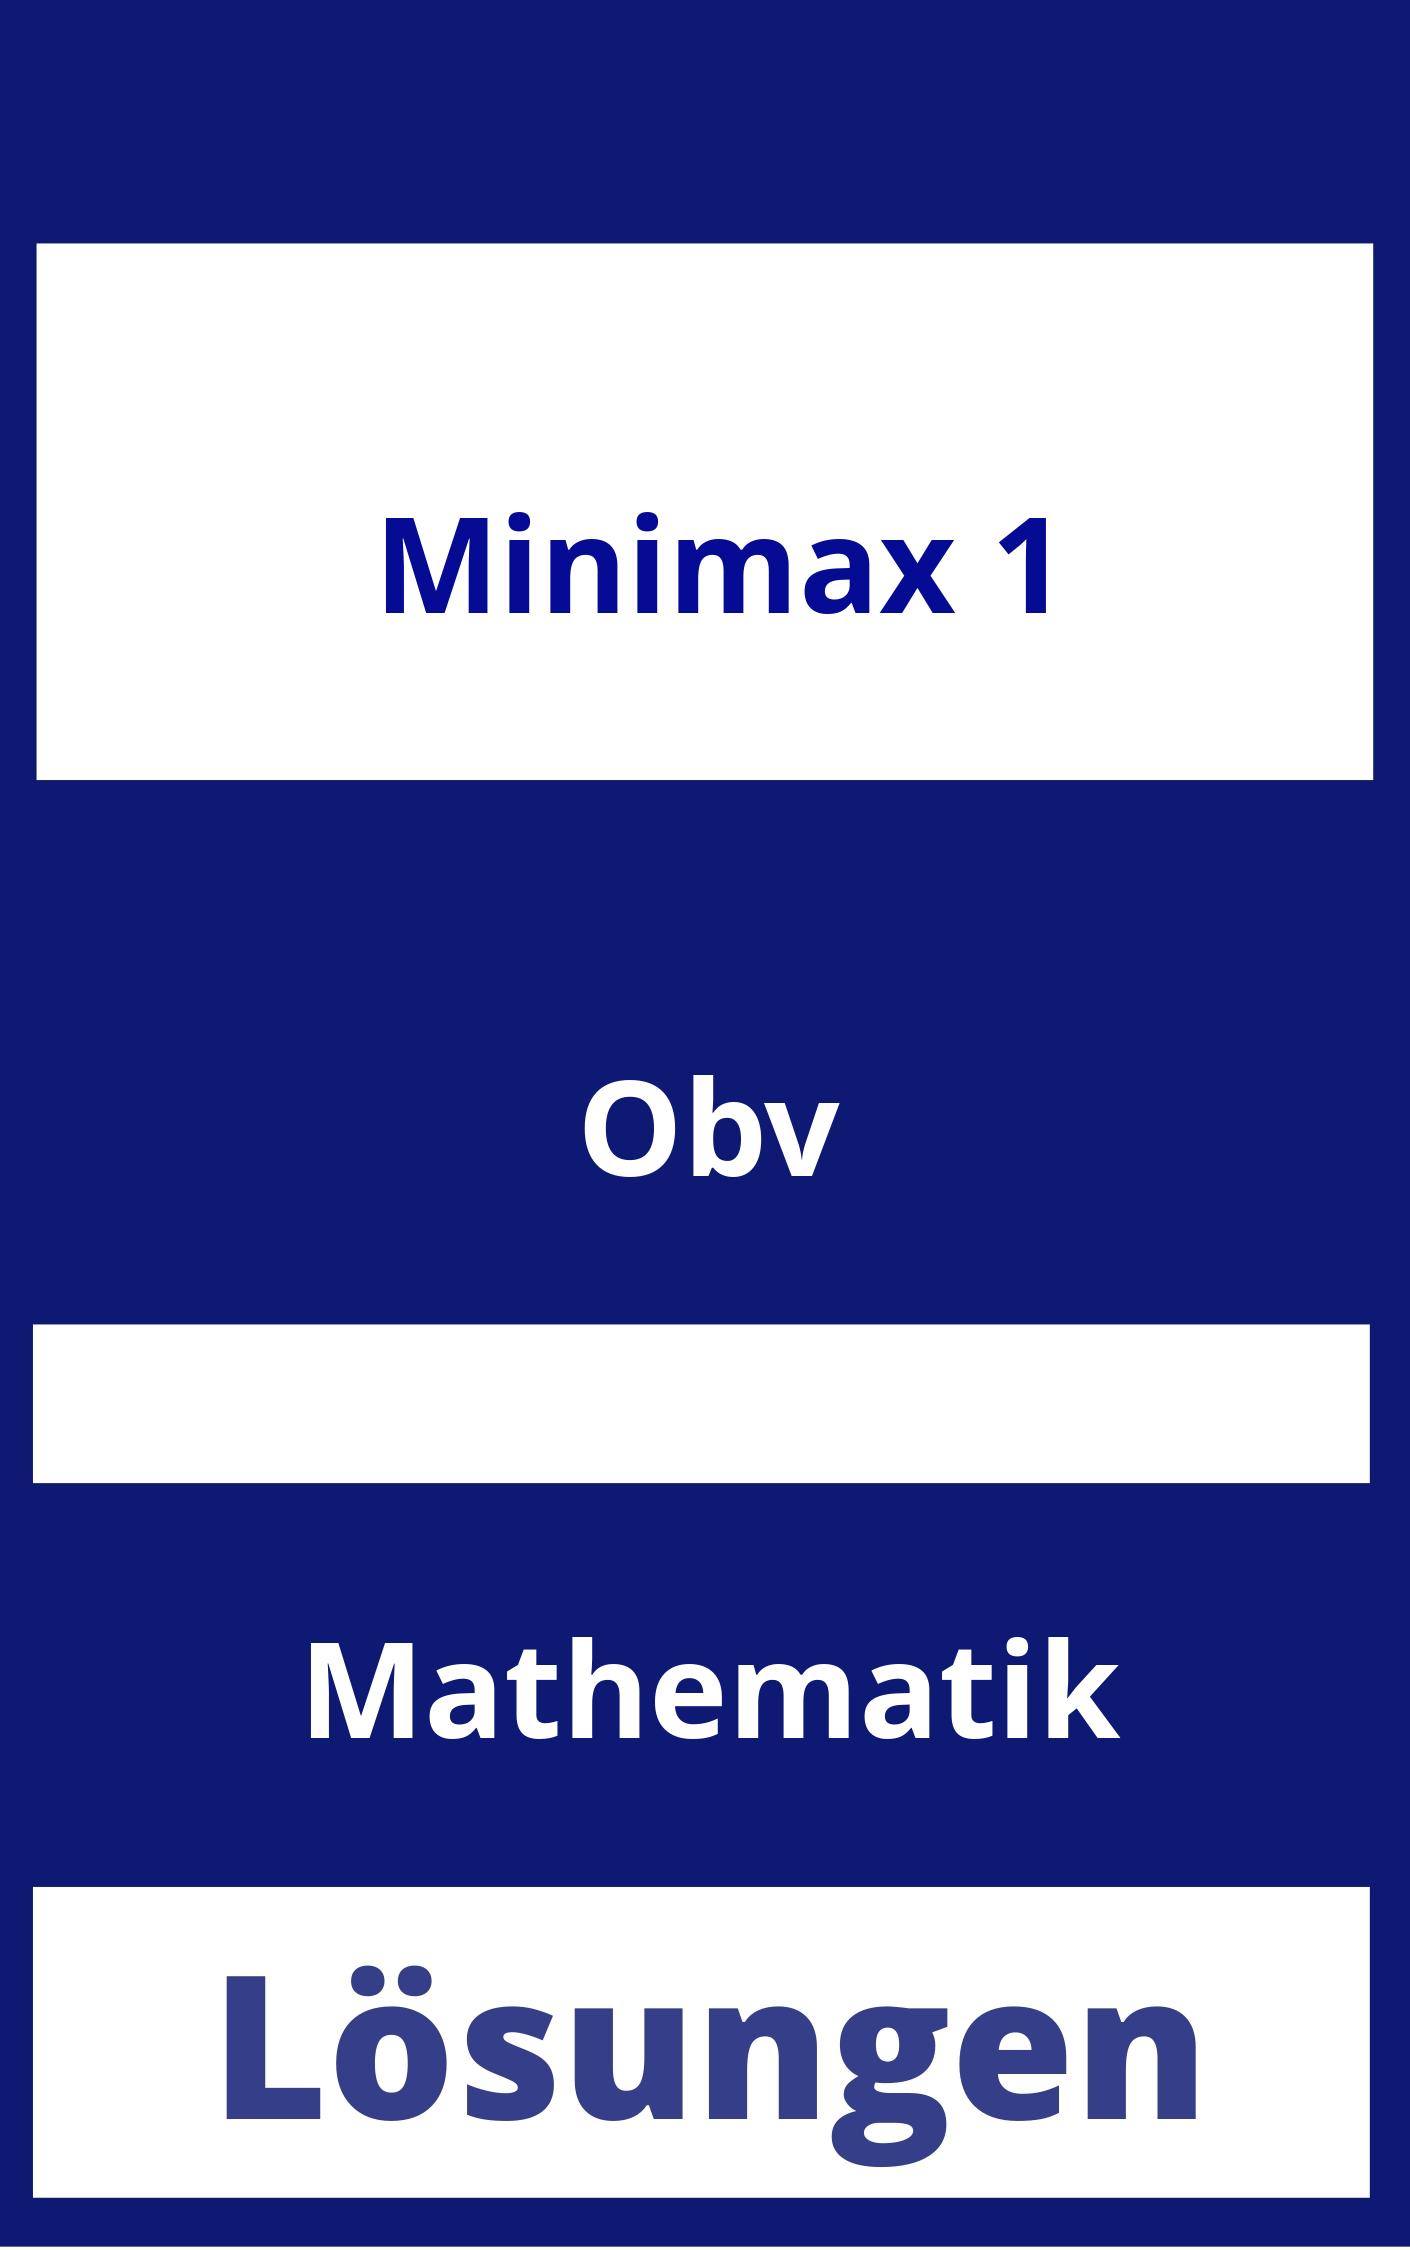 MiniMax 1 Lösungen PDF